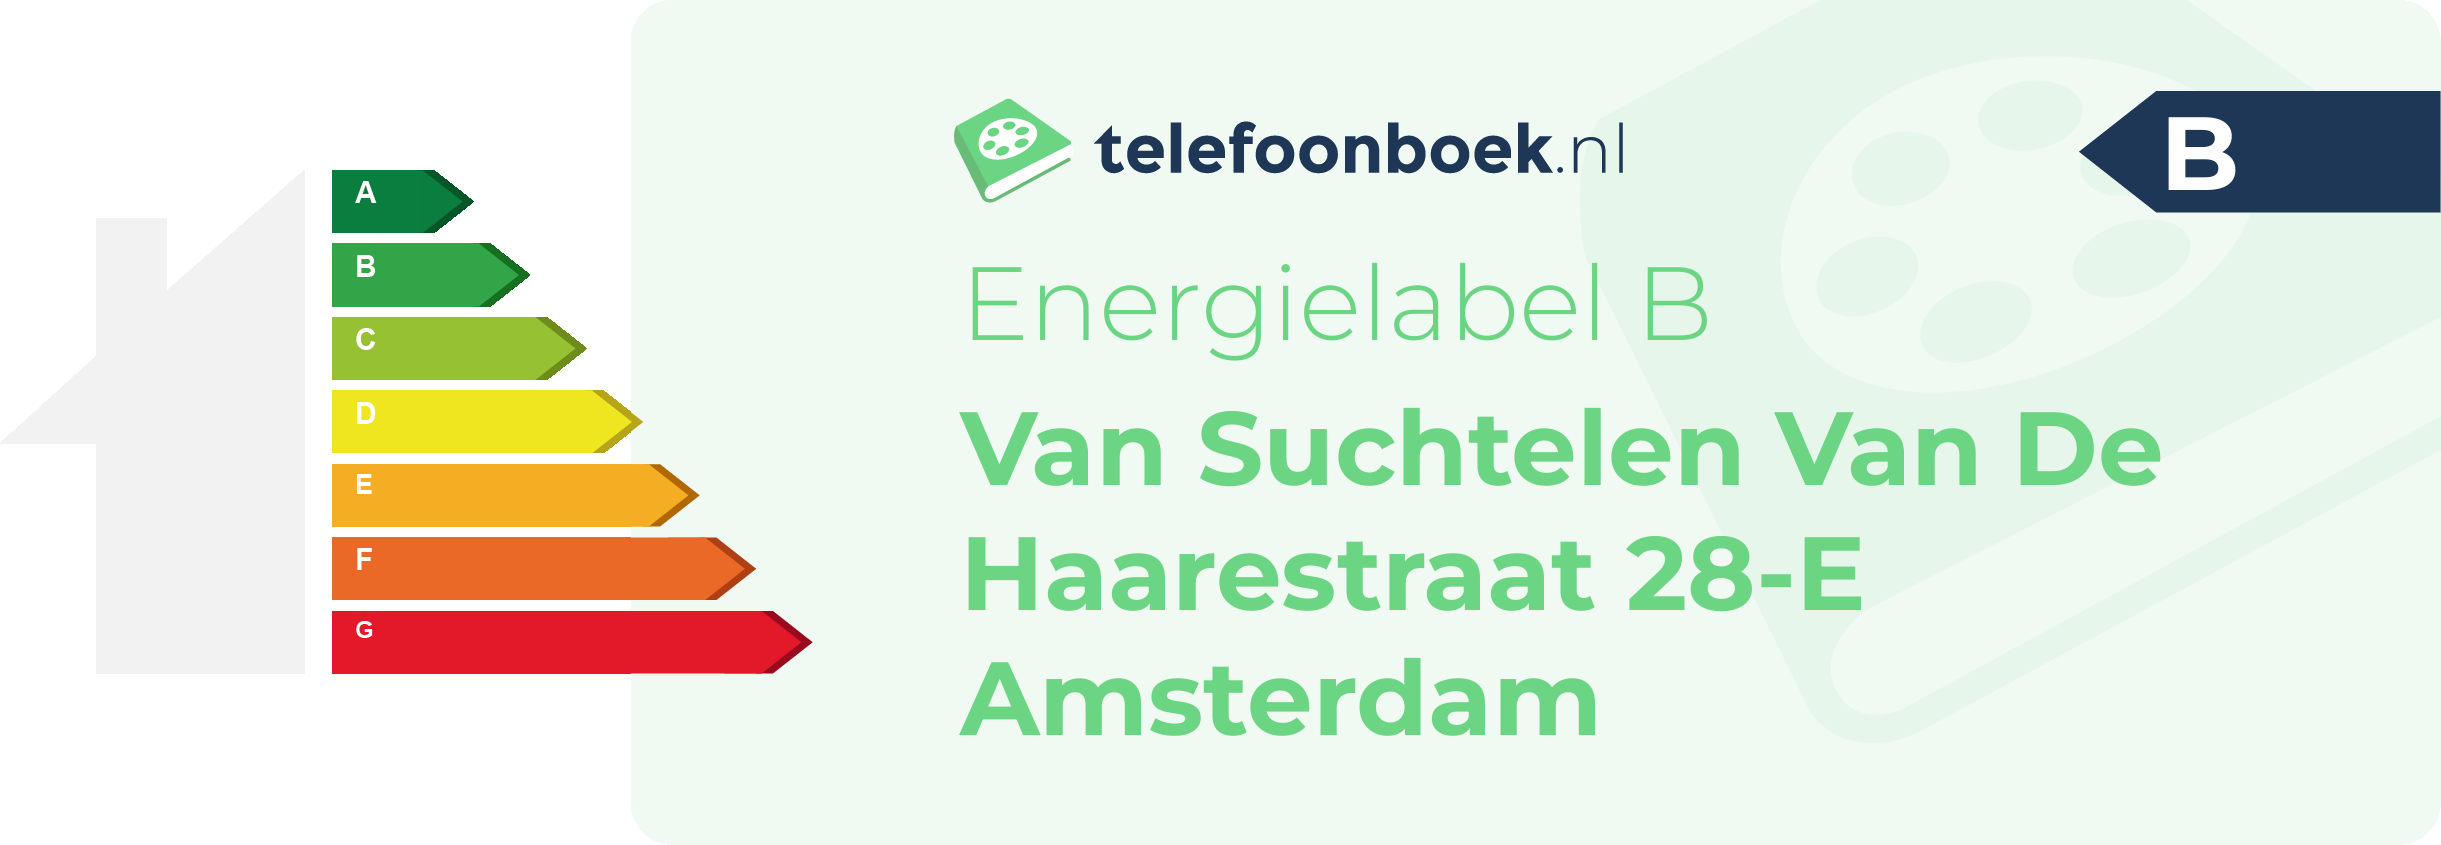 Energielabel Van Suchtelen Van De Haarestraat 28-E Amsterdam